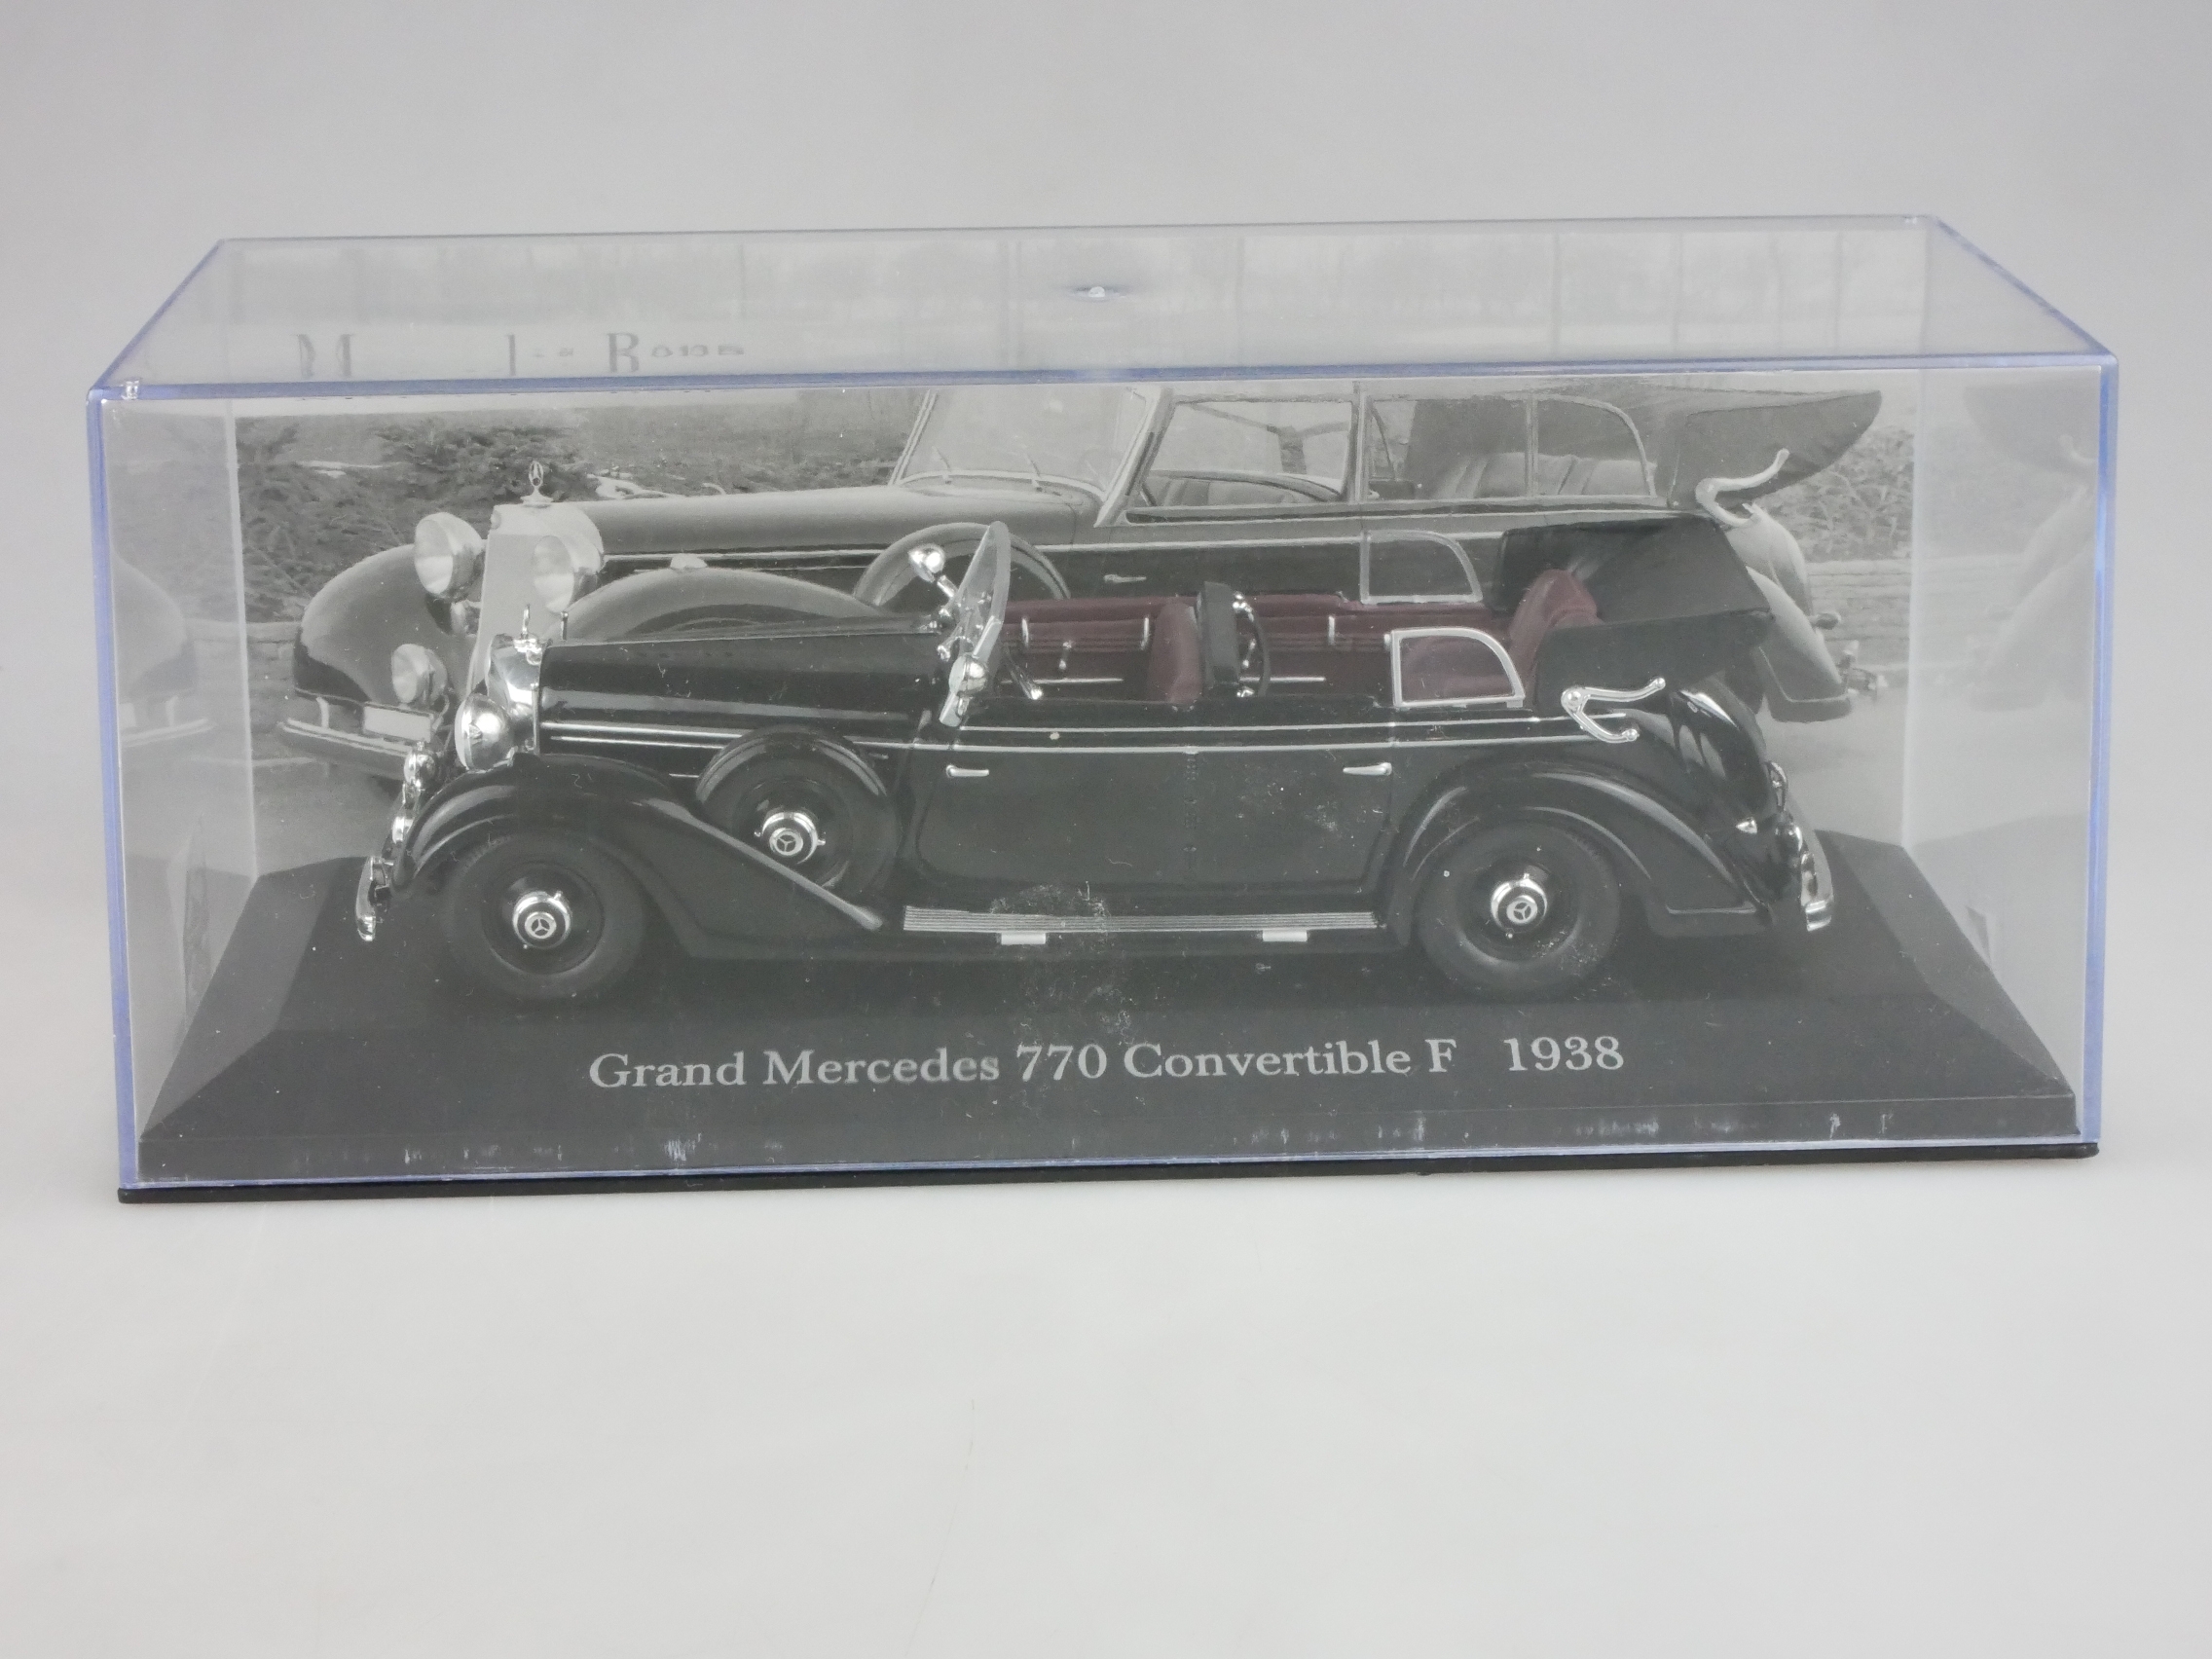 Grand Mercedes 770 Convertible F W150 1938 De Agostini 1/43 + Vitrine 126279